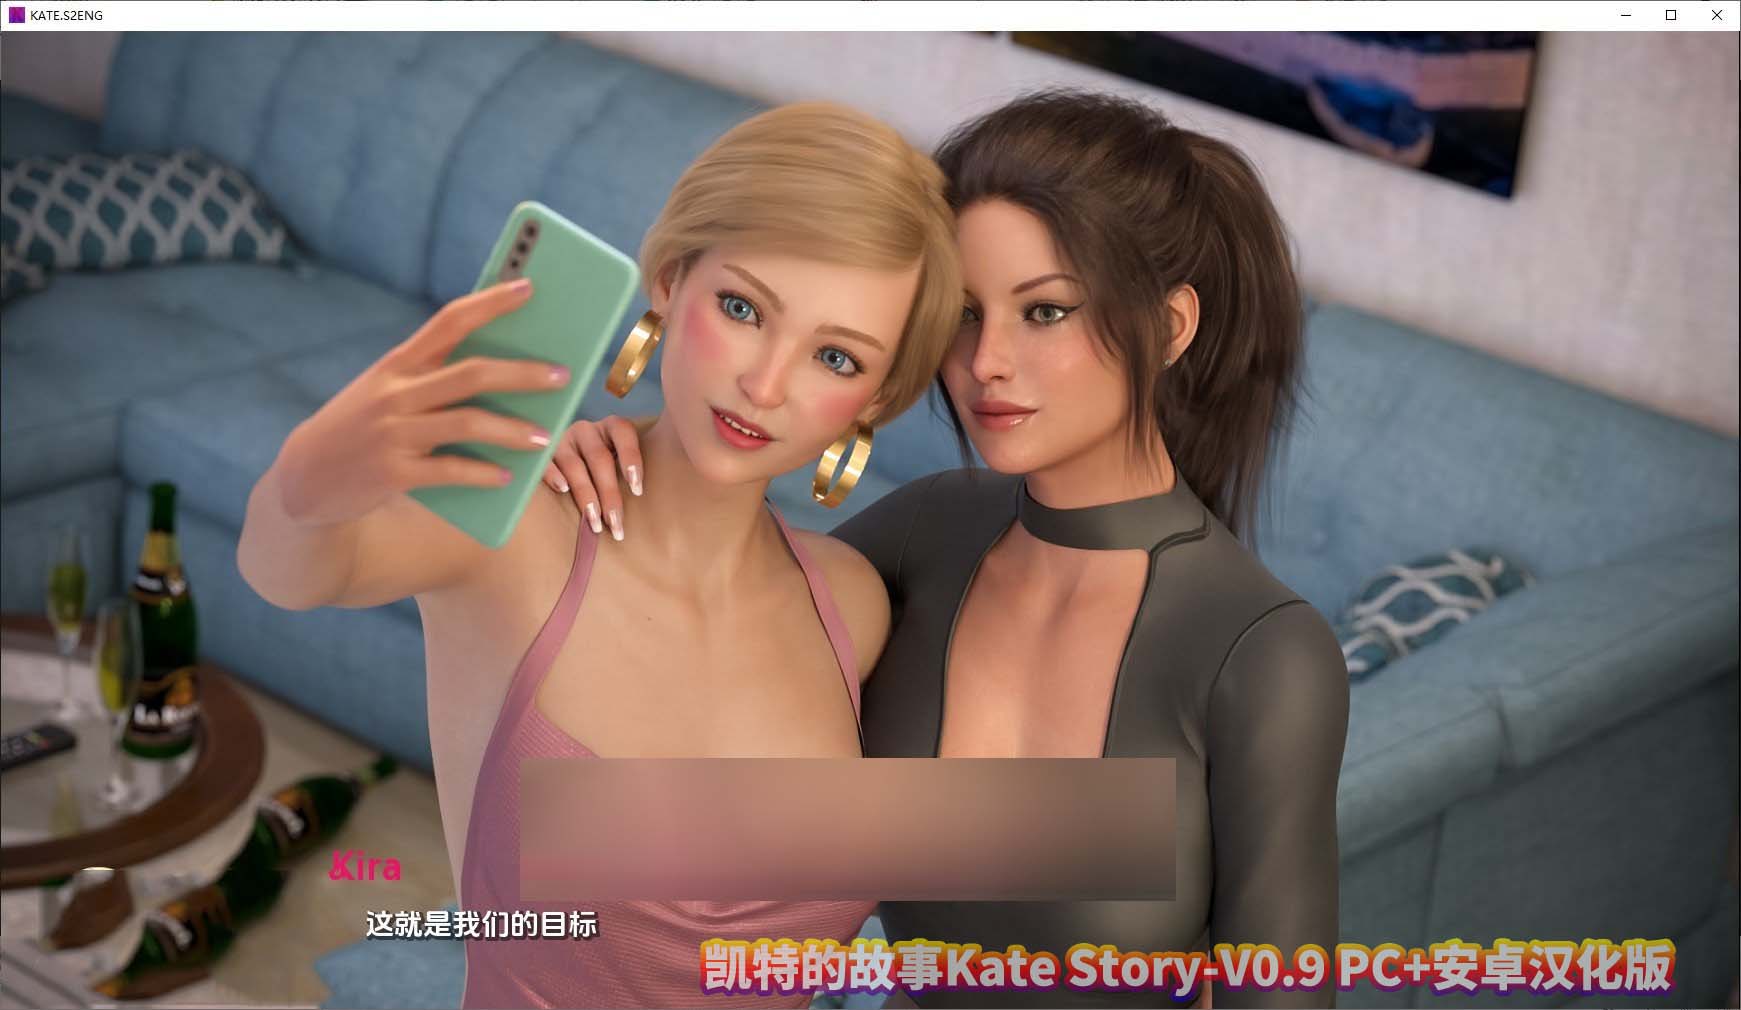 凯特的故事Kate Story-V0.9 PC+安卓汉化版[百度云下载]